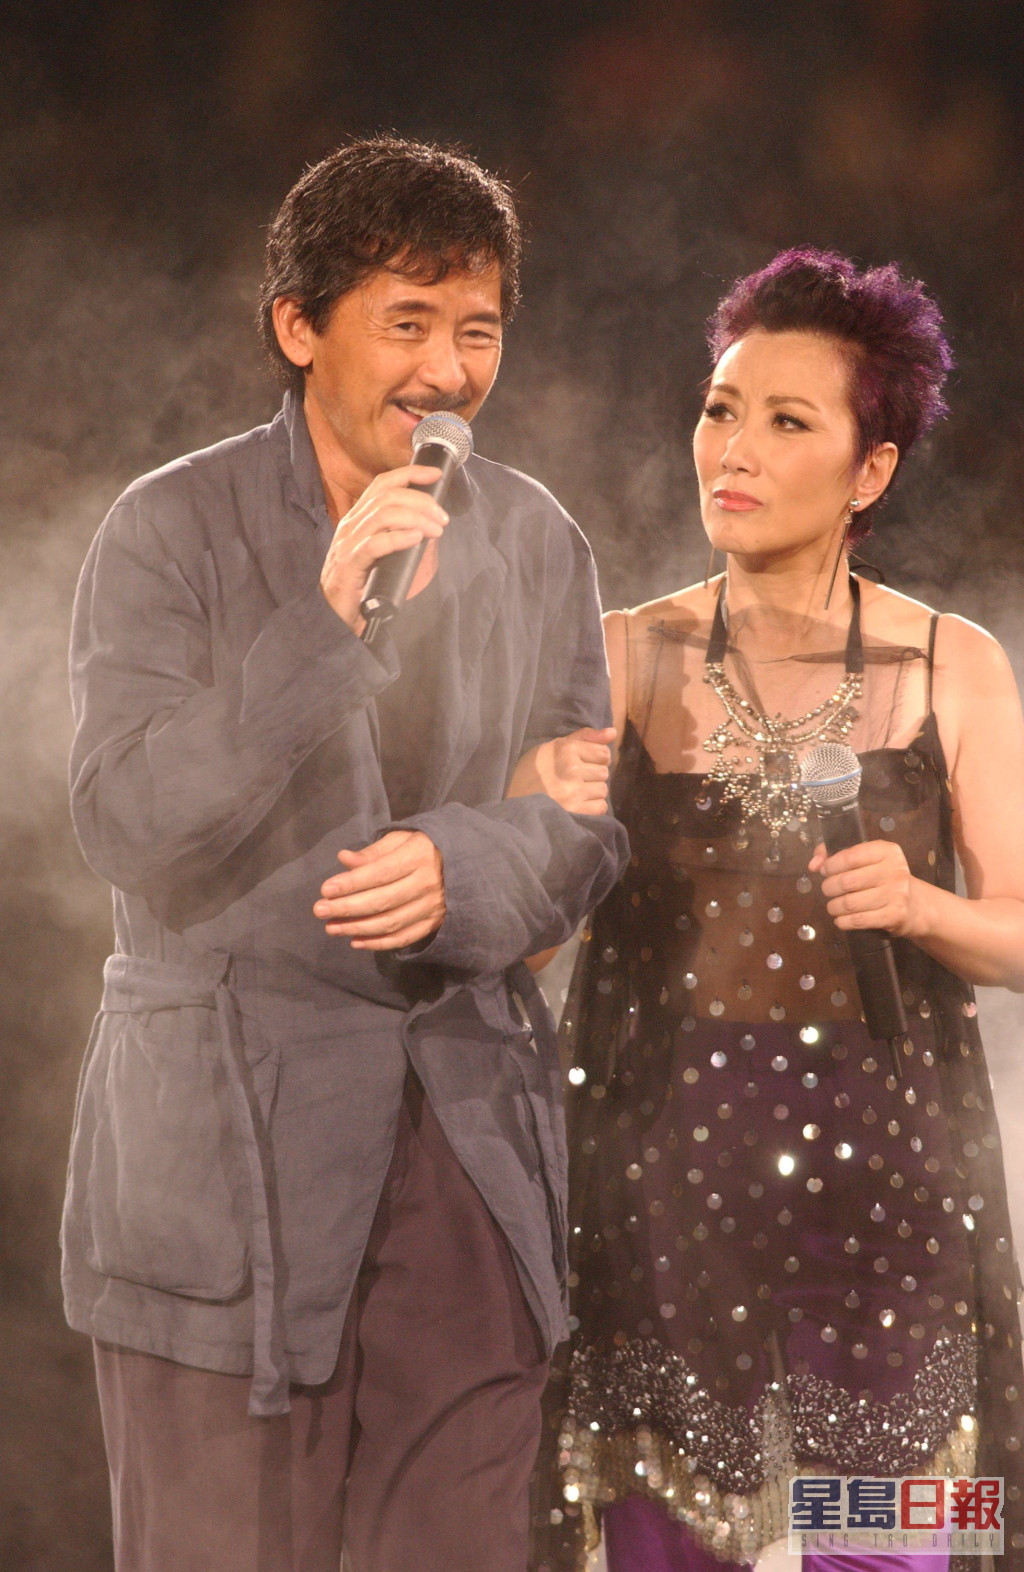 阿Lam為汪明荃演唱會做嘉賓出事。